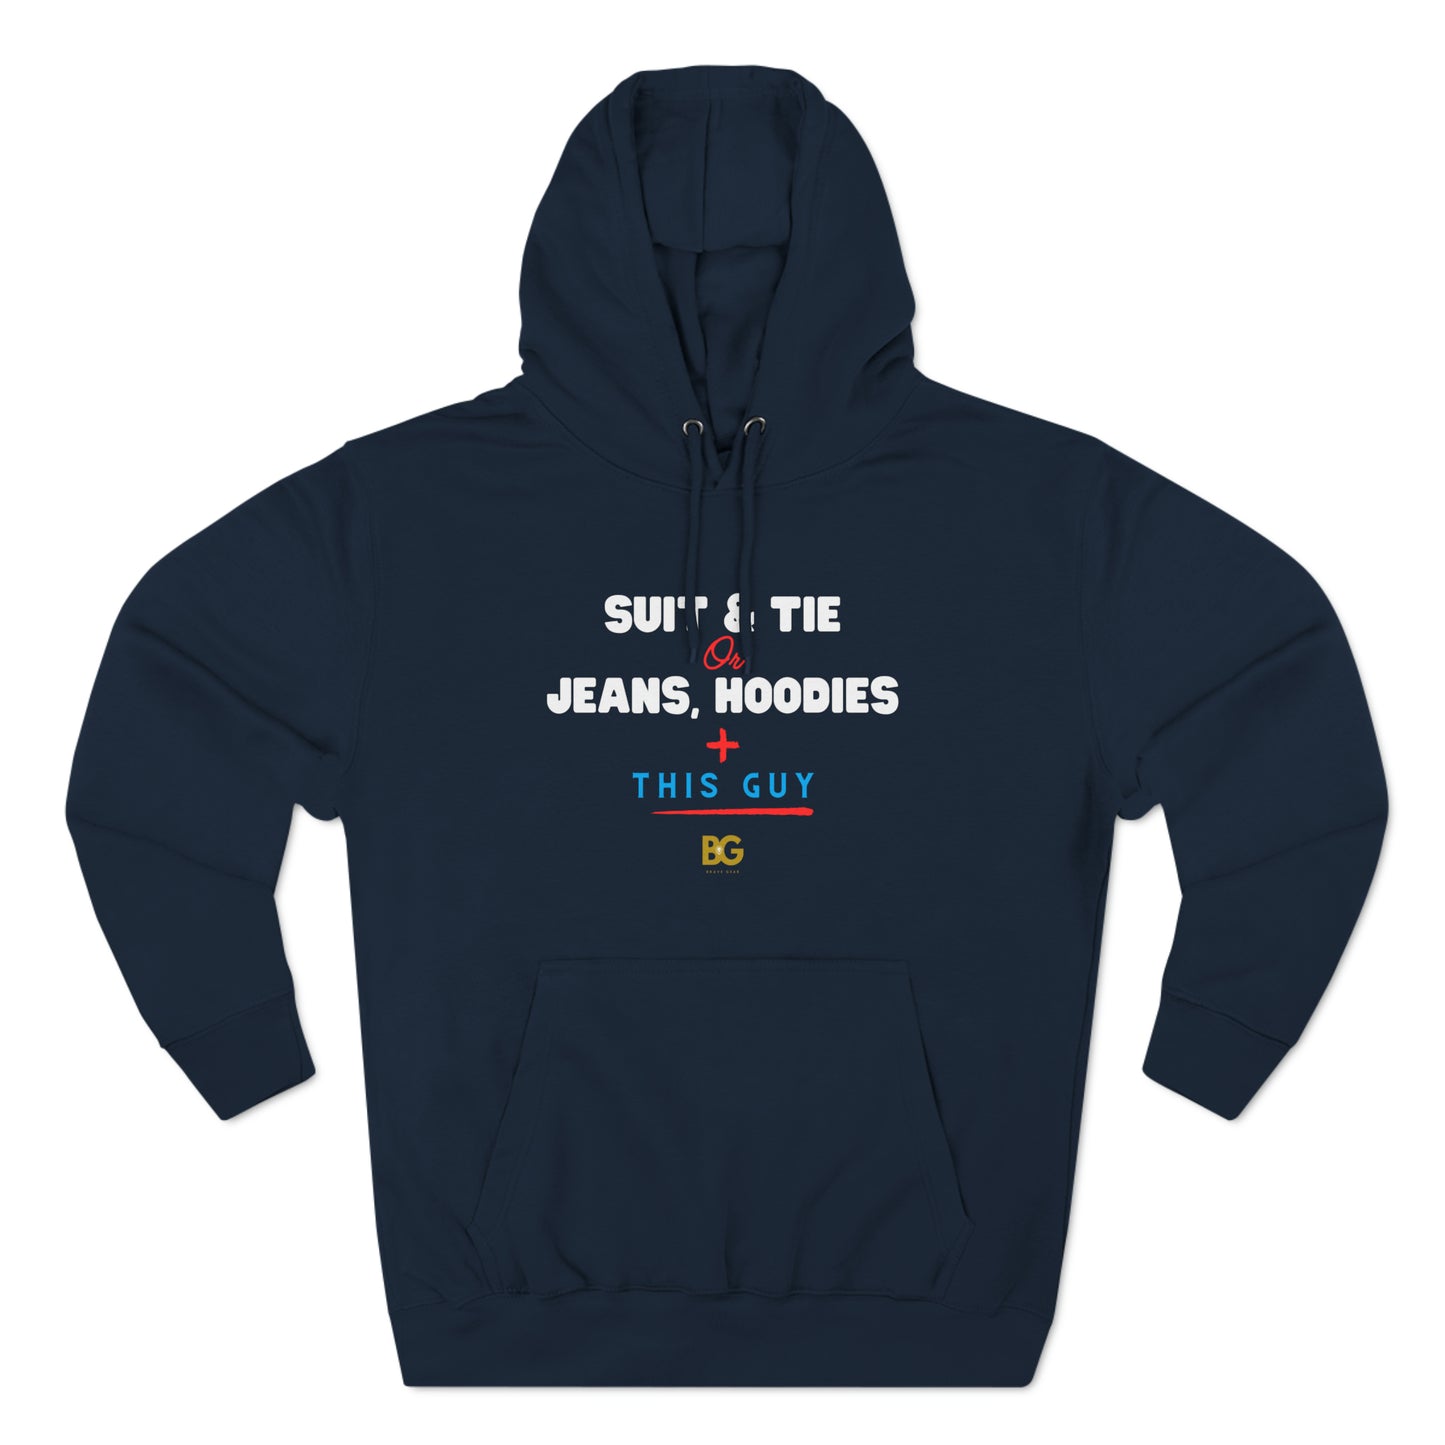 BG "Suit & Tie or Jeans, Hoodies + this Guy" Premium Pullover Hoodie